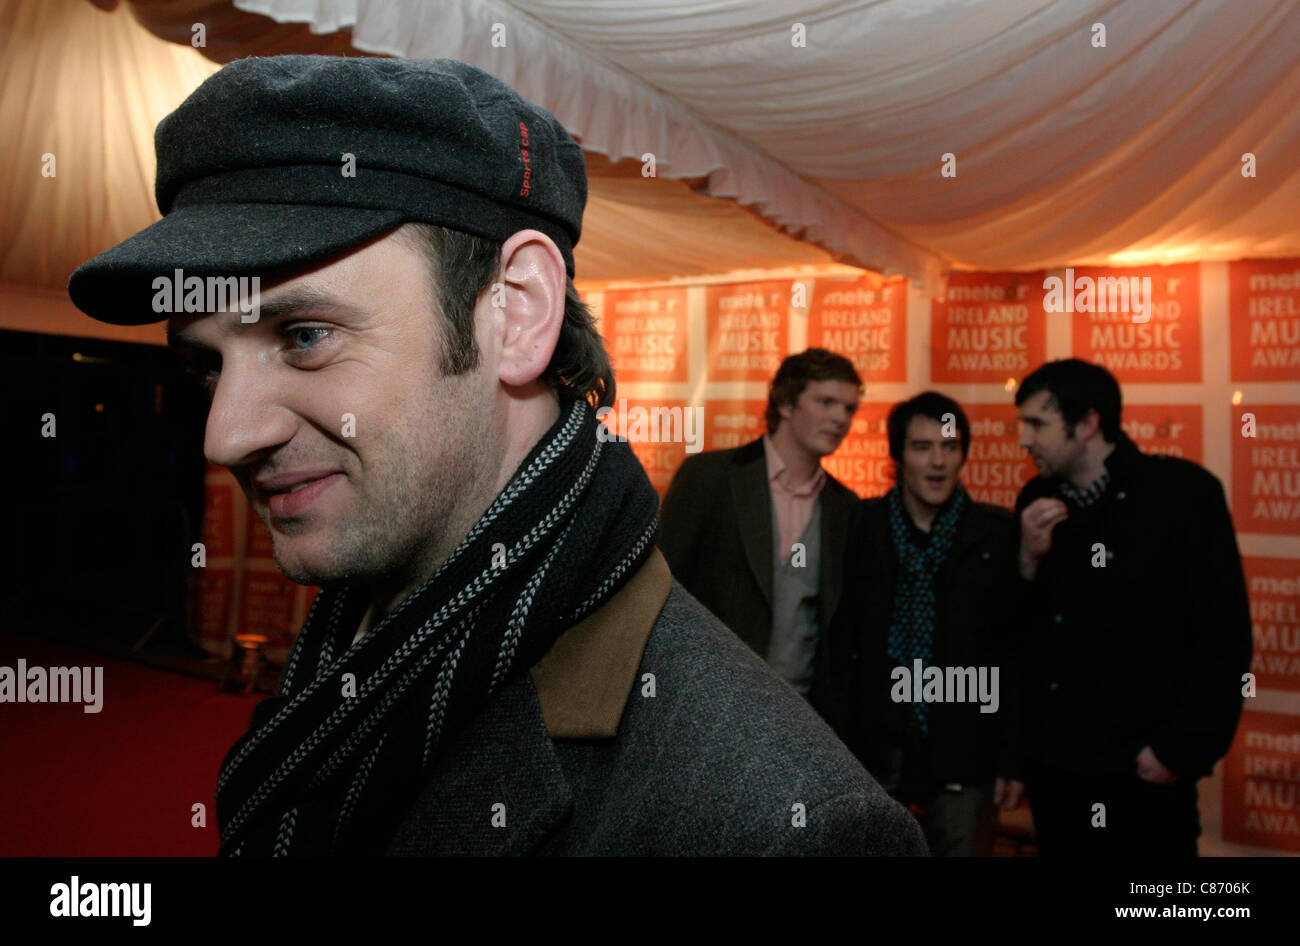 Les blizzards au meteor music awards 2007, Dublin, République d'Irlande Banque D'Images